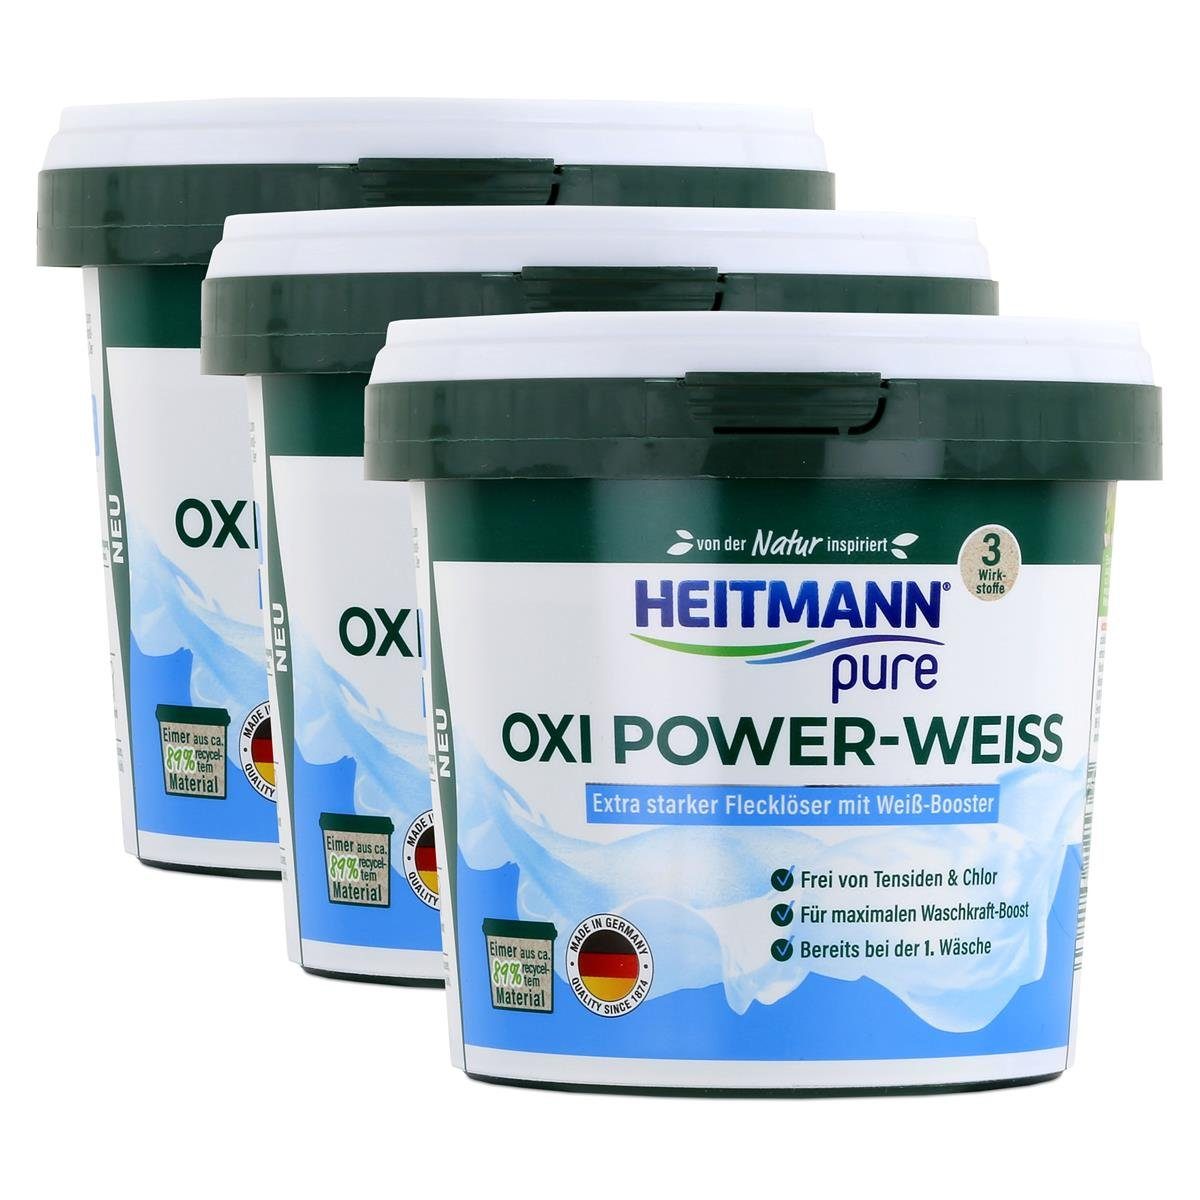 HEITMANN Flecklöser mit (3er - pure Heitmann Vollwaschmittel Power-Weiss Oxi Weiß-Booster 500g